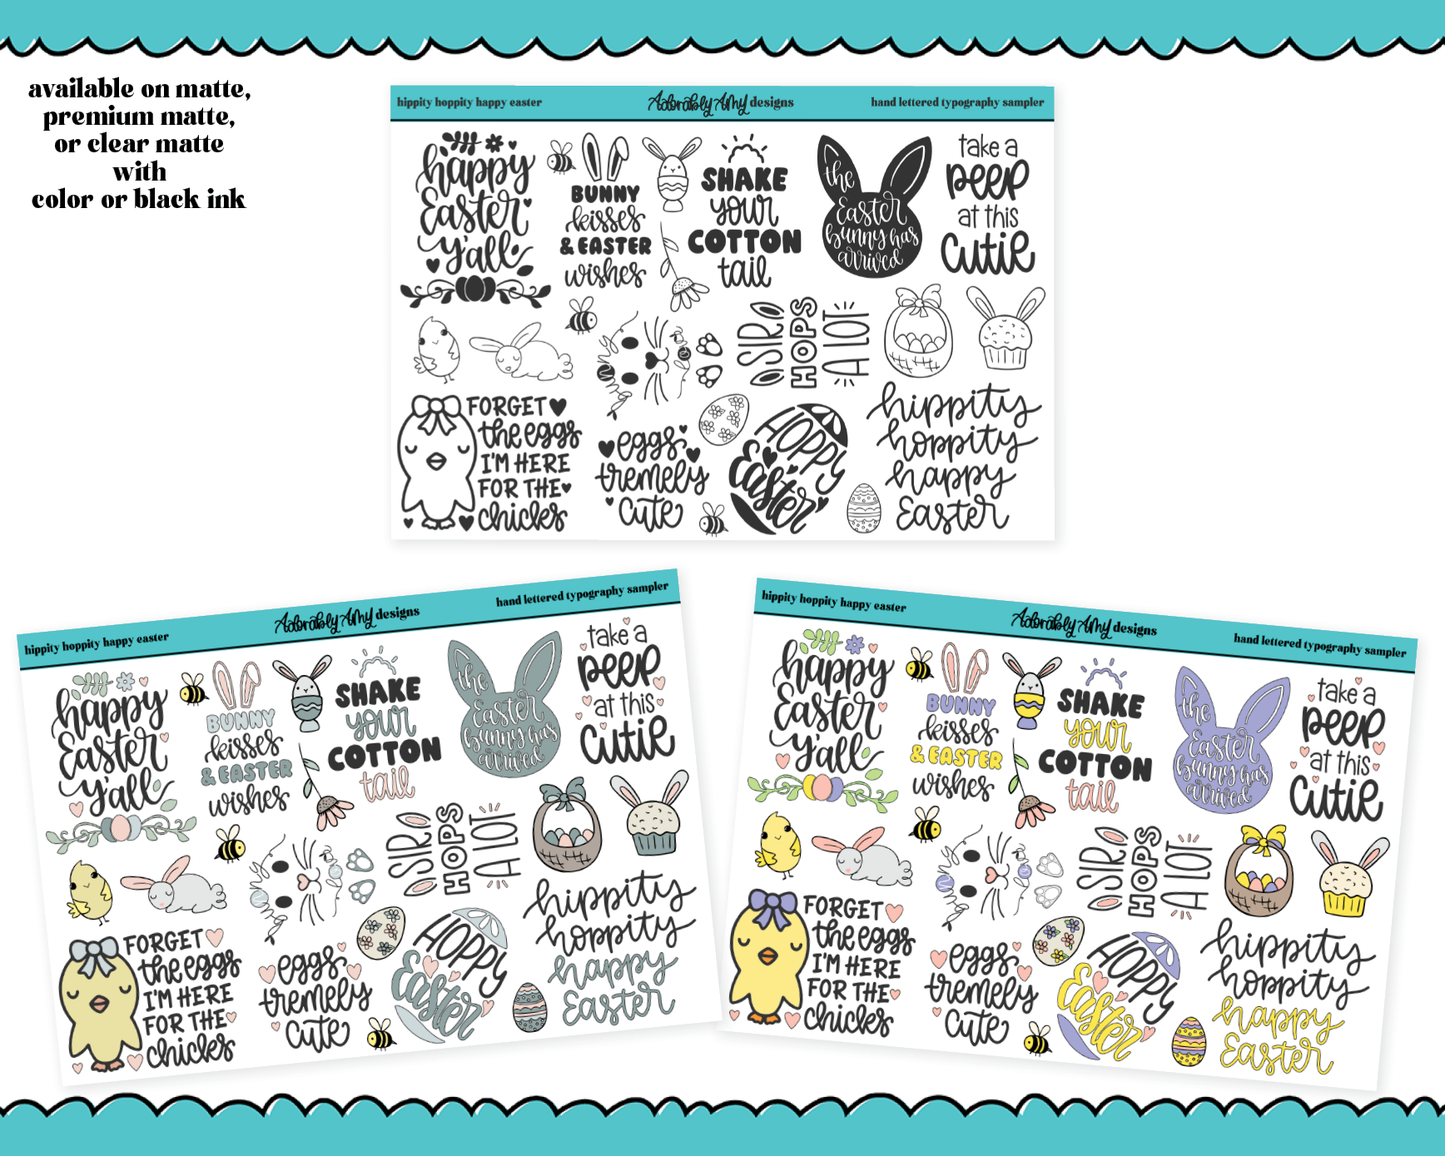 Hand Lettered Hippity Hoppity Easter Typography Sampler Planner Stickers for any Planner or Insert